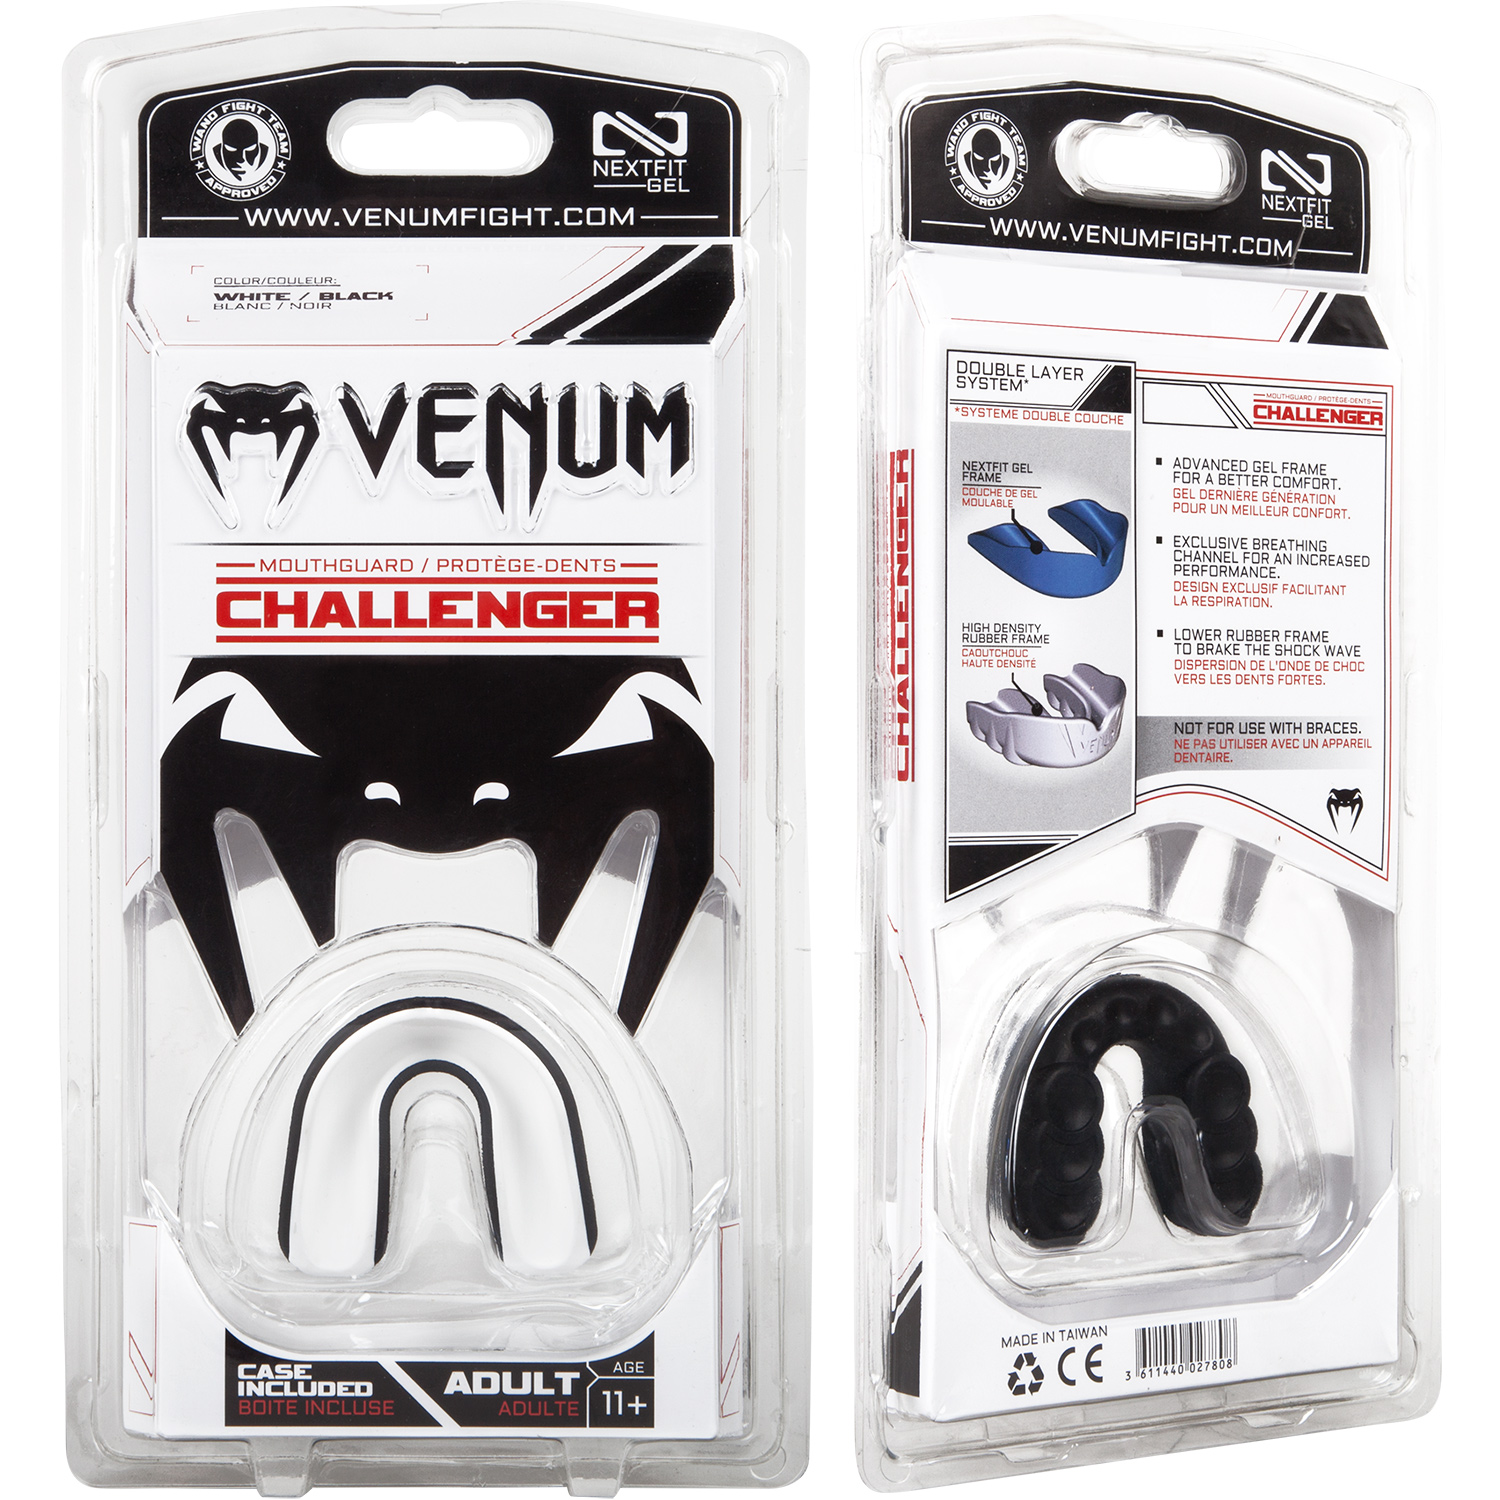 Капа боксерская Venum Challenger Black/White